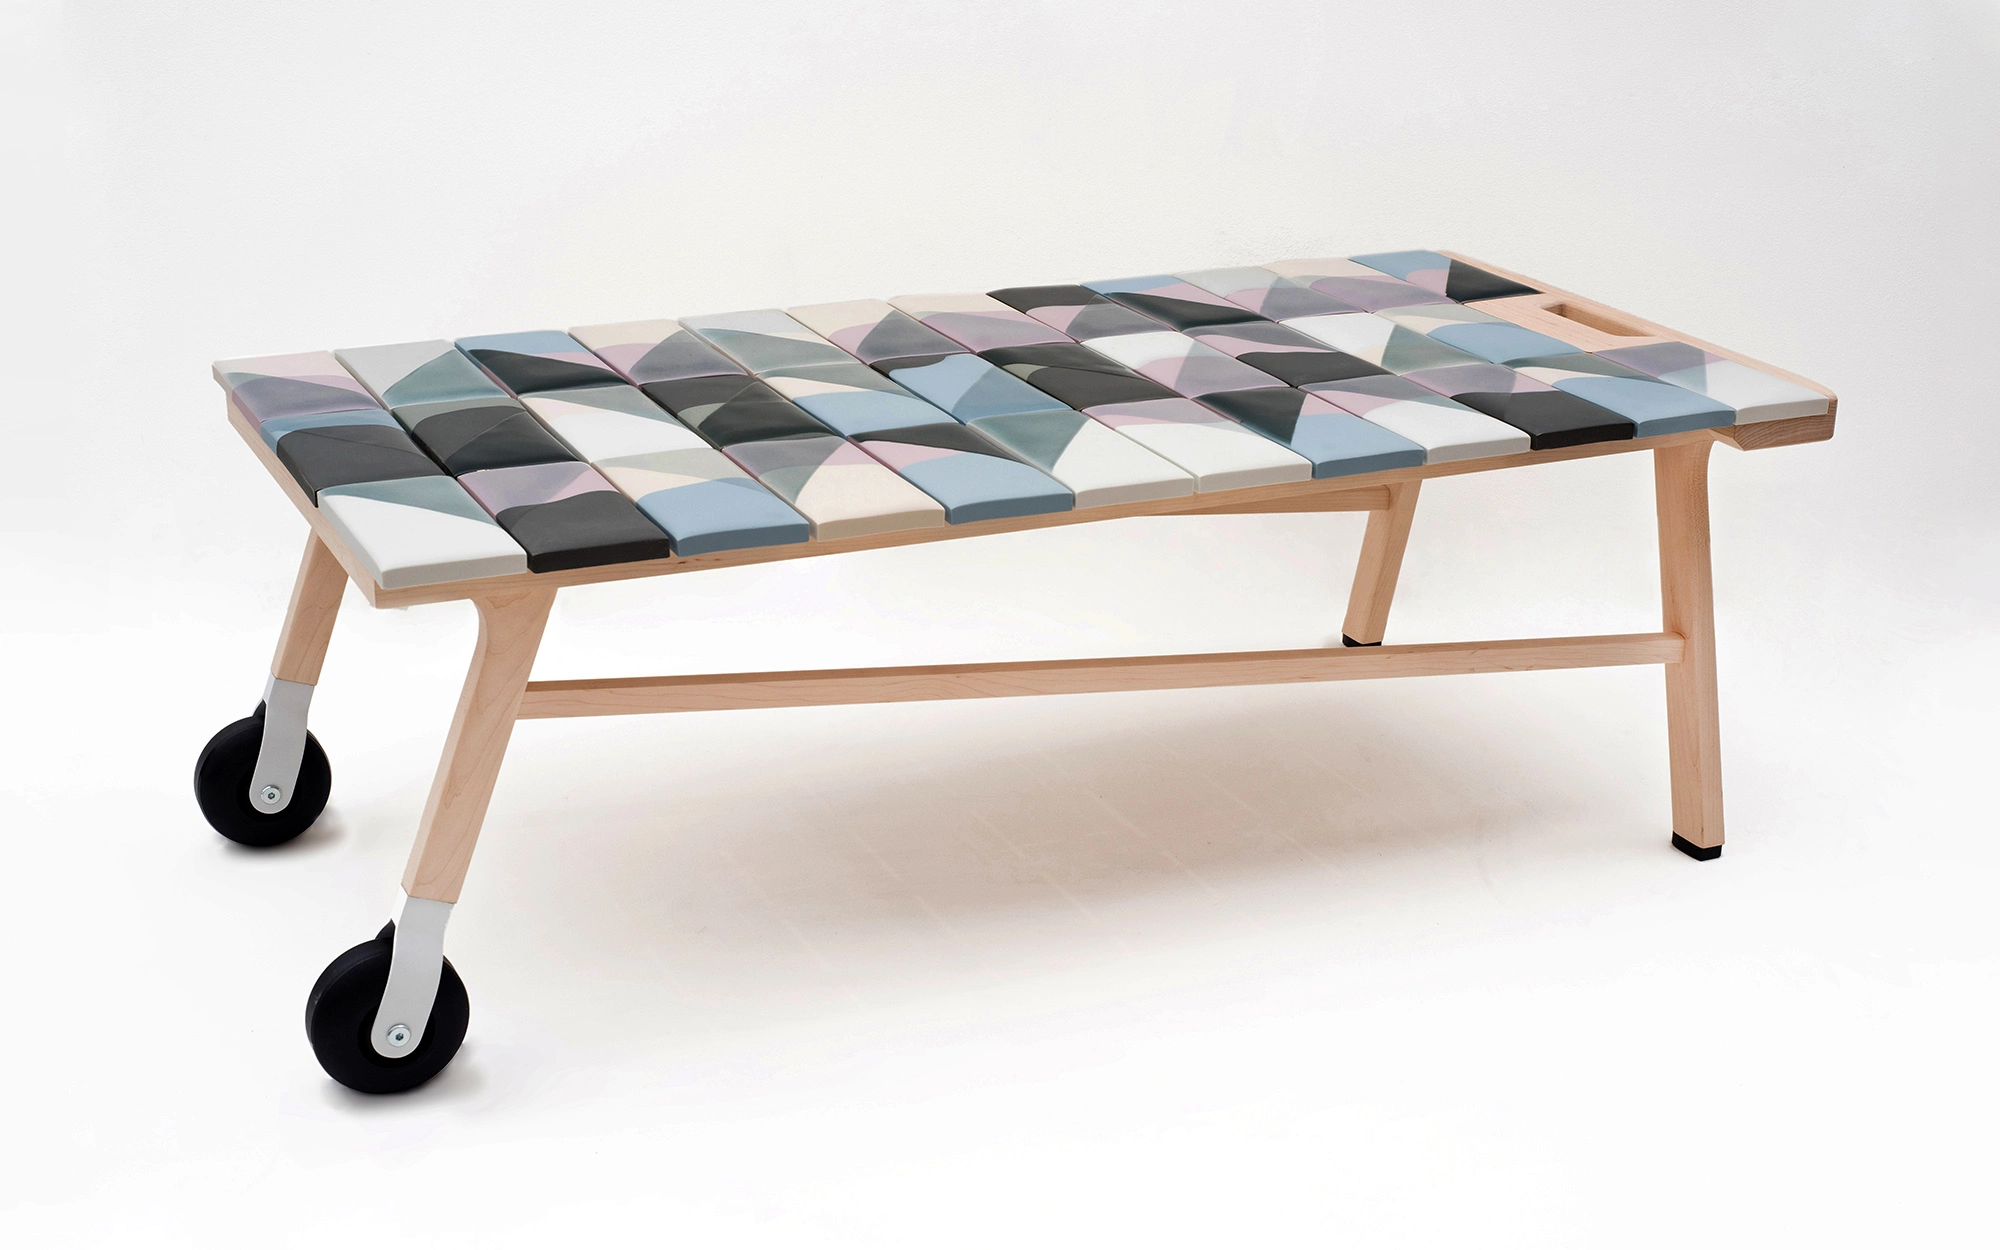 Tiles coffee table - Hella Jongerius - Chair - Galerie kreo